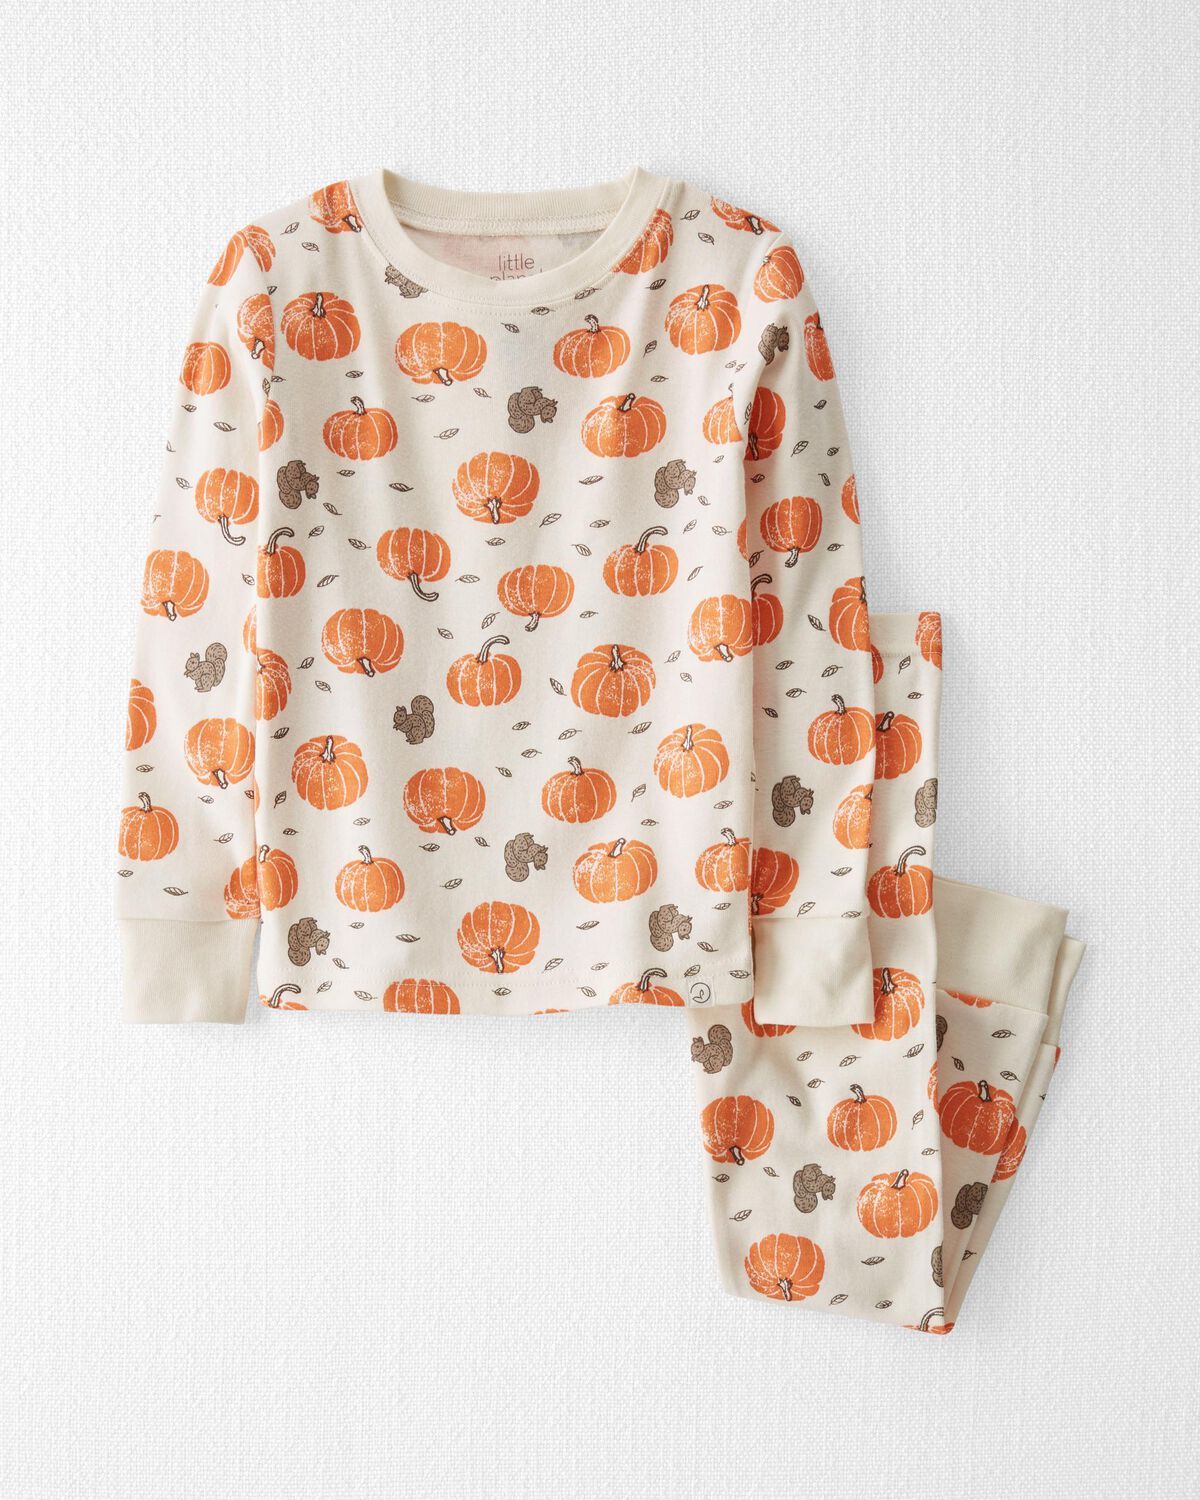 Harvest Pumpkin on Sweet Cream Toddler Organic Cotton Pajamas Set | carters.com | Carter's